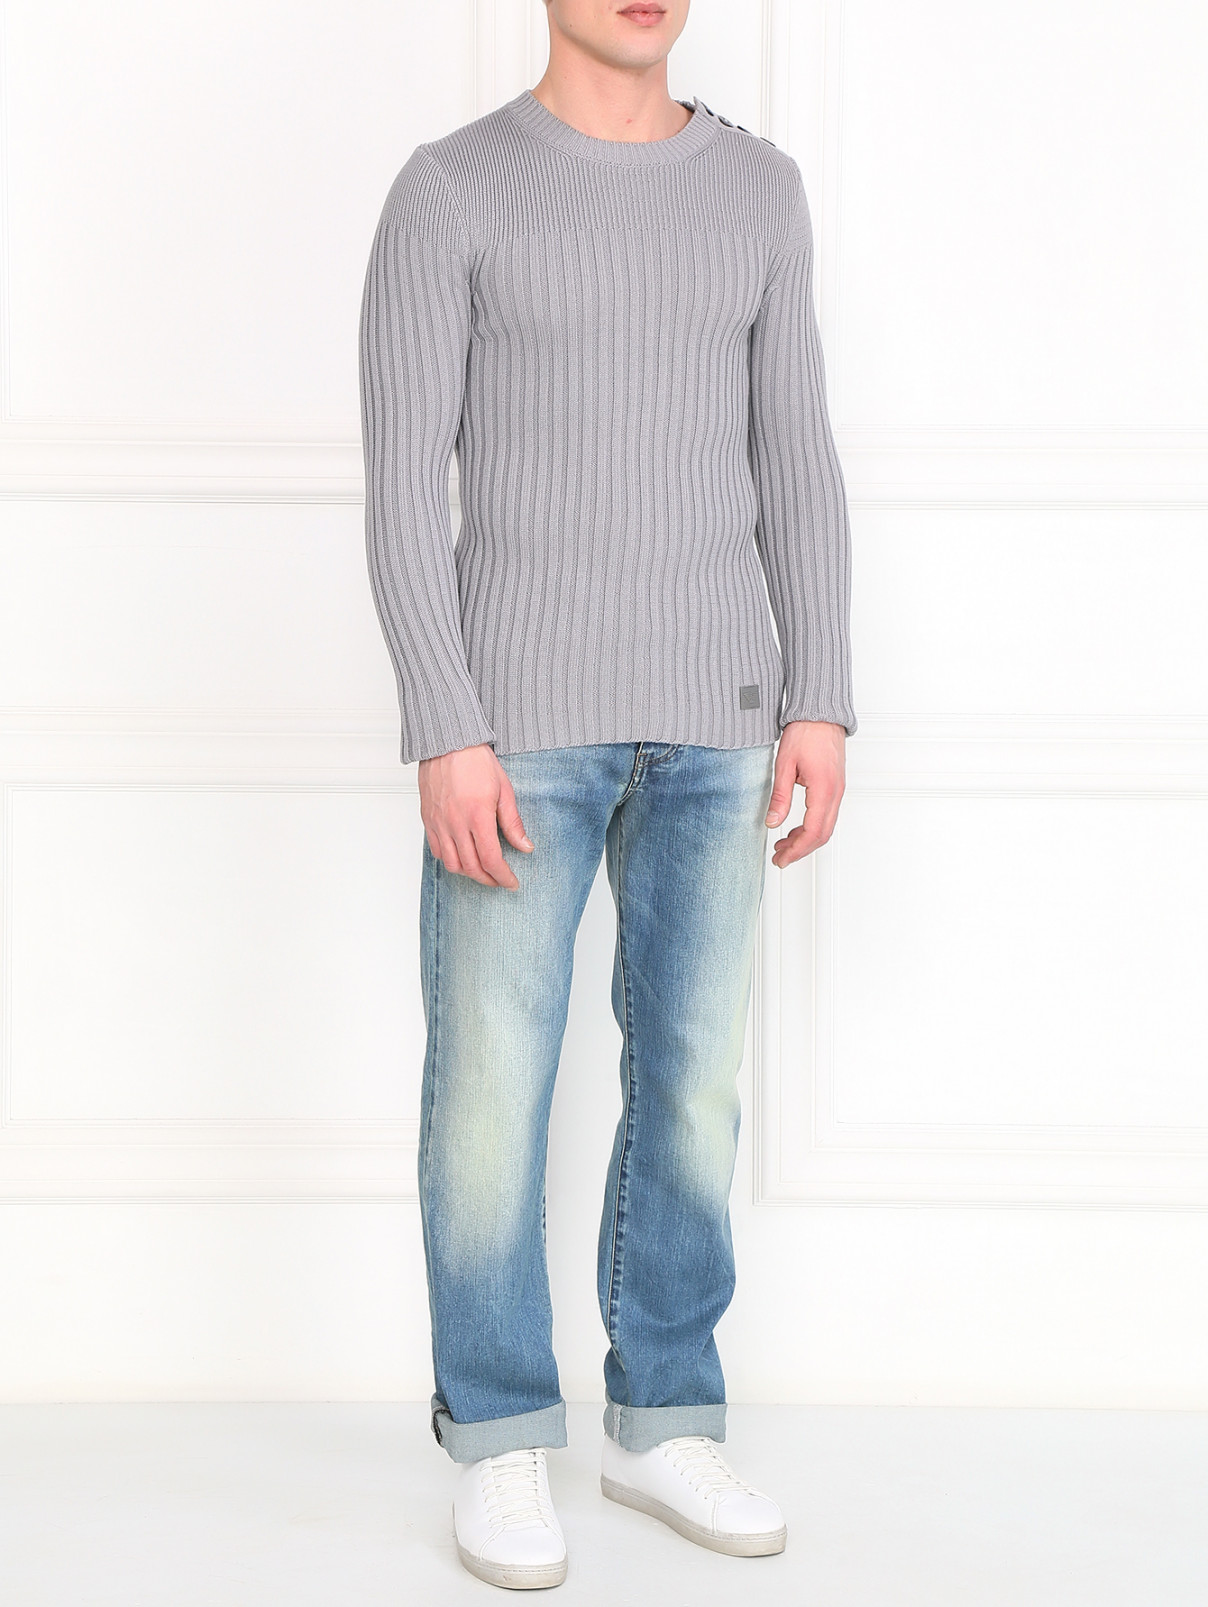 Джемпер из хлопка плотной вязки Emporio Armani  –  Модель Общий вид  – Цвет:  Серый